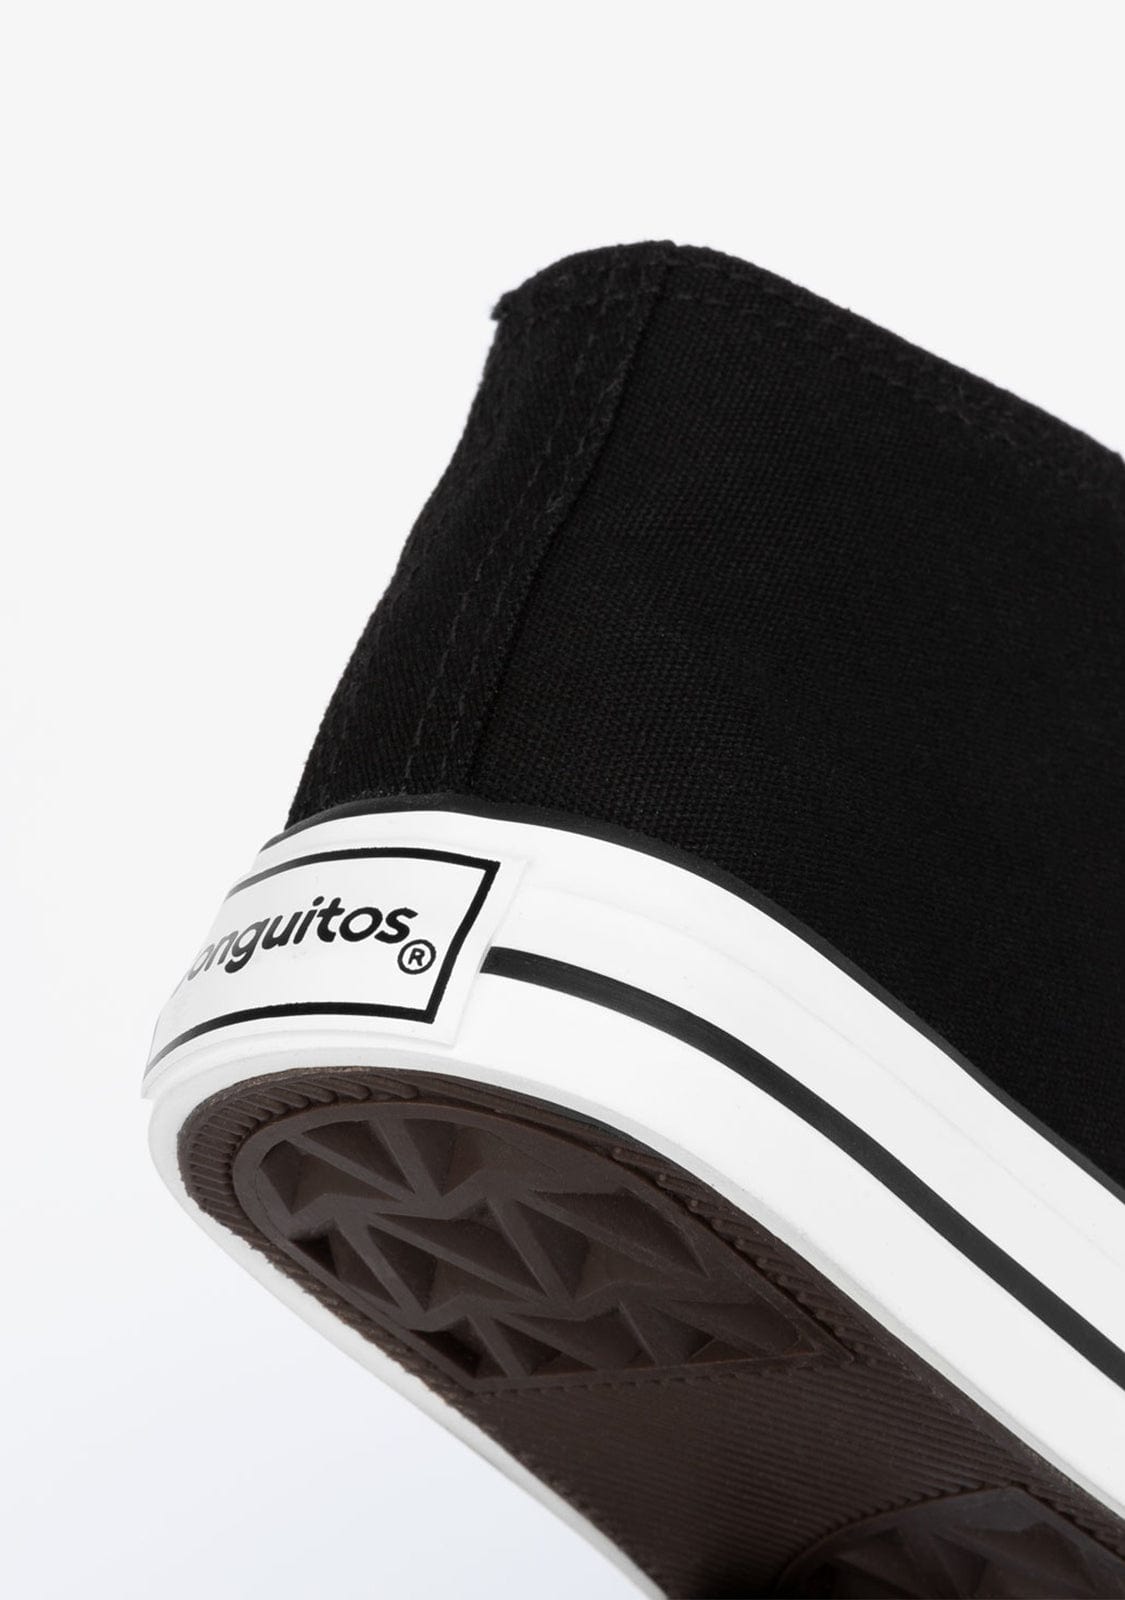 CONGUITOS Shoes Unisex Black Basic Hi-Top Sneakers Canvas